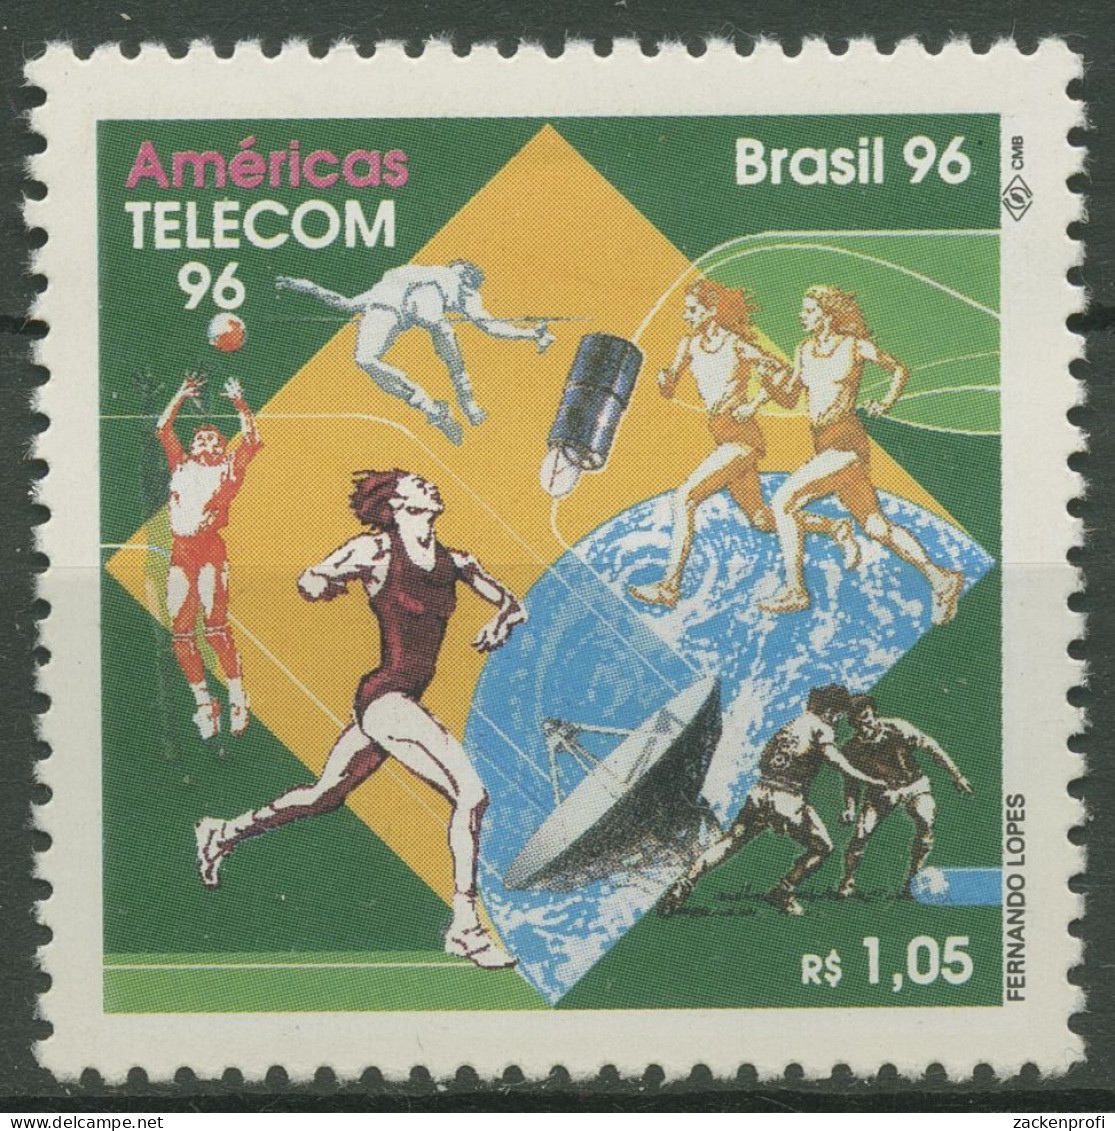 Brasilien 1996 Fernmeldetechnik AMERICAS TELEKOM Satellit 2708 Postfrisch - Unused Stamps